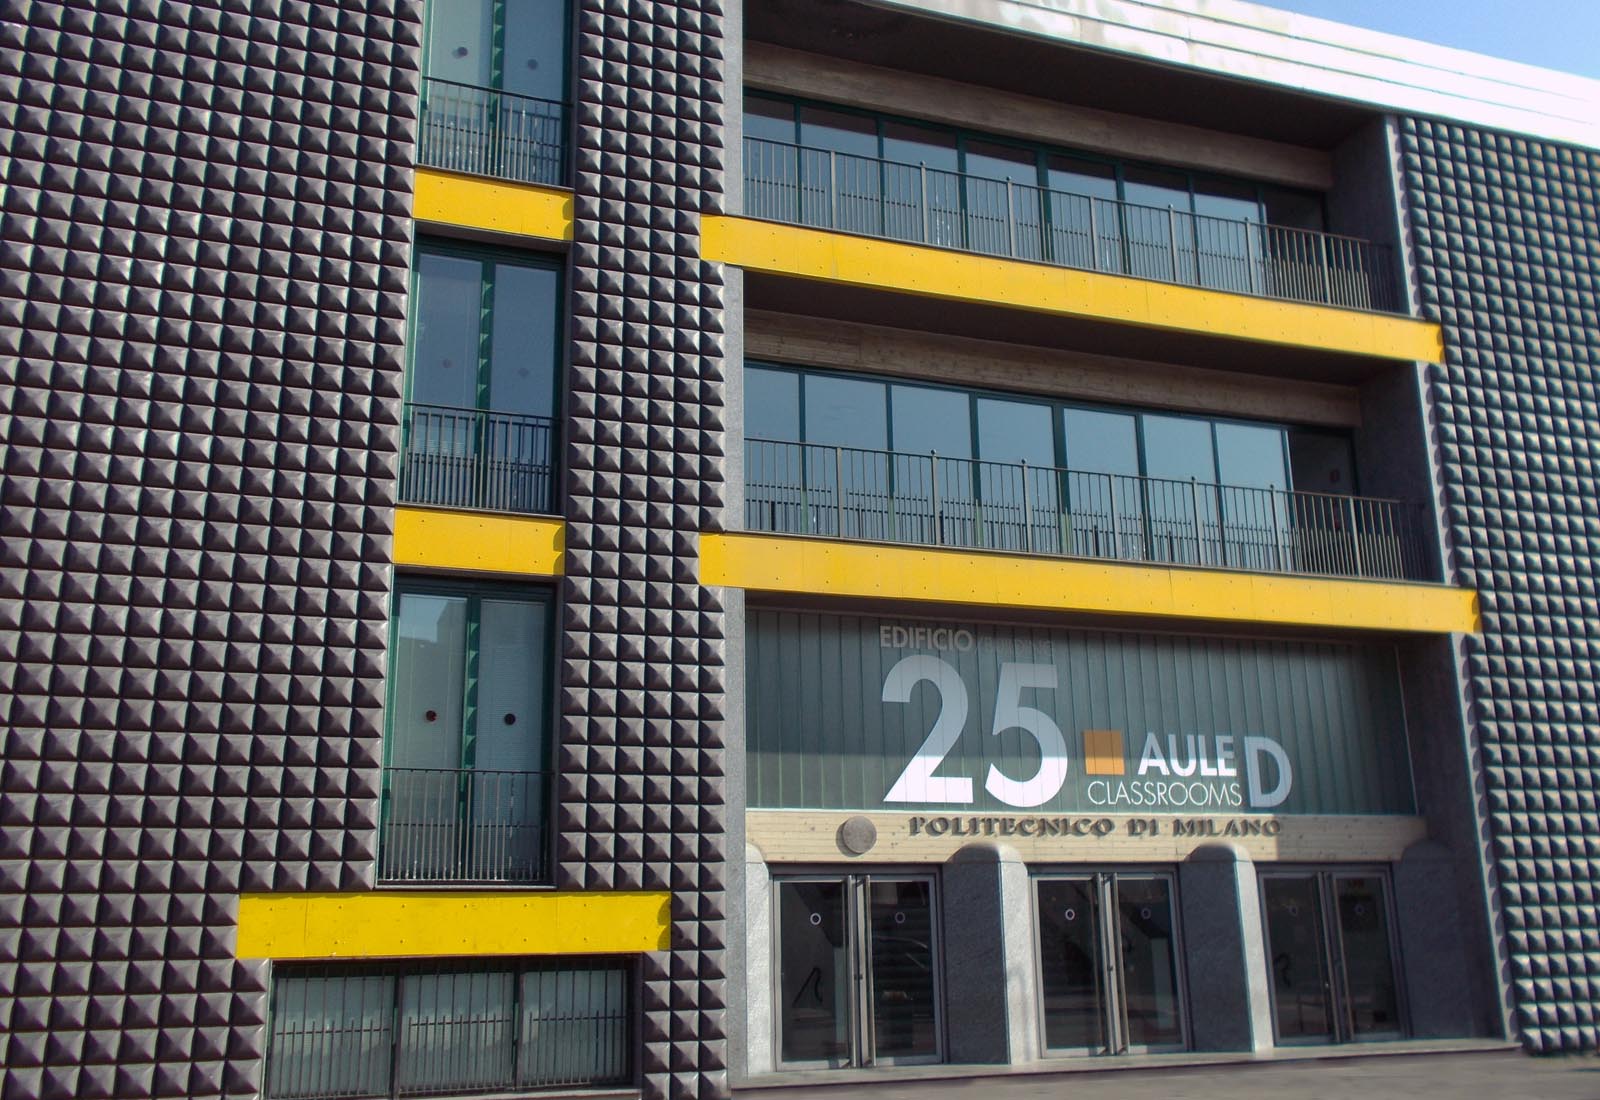 Edificio 25 Politecnico di Milano - Il fronte sud